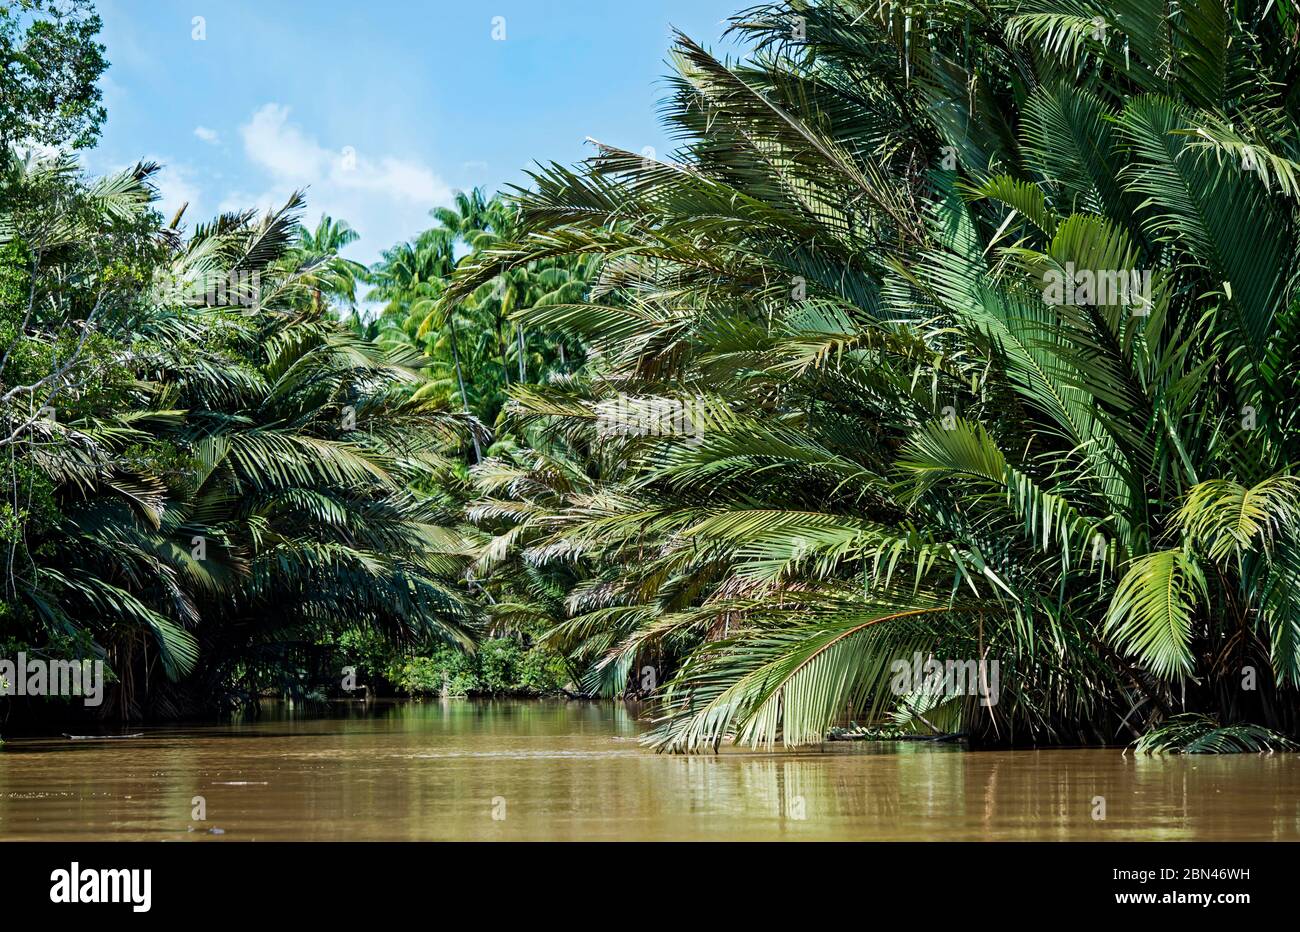 Bosque de palmeras de la nipa ribereña, llanura inundada del río Kinabatangan, Sabah, Borneo, Malasia Foto de stock